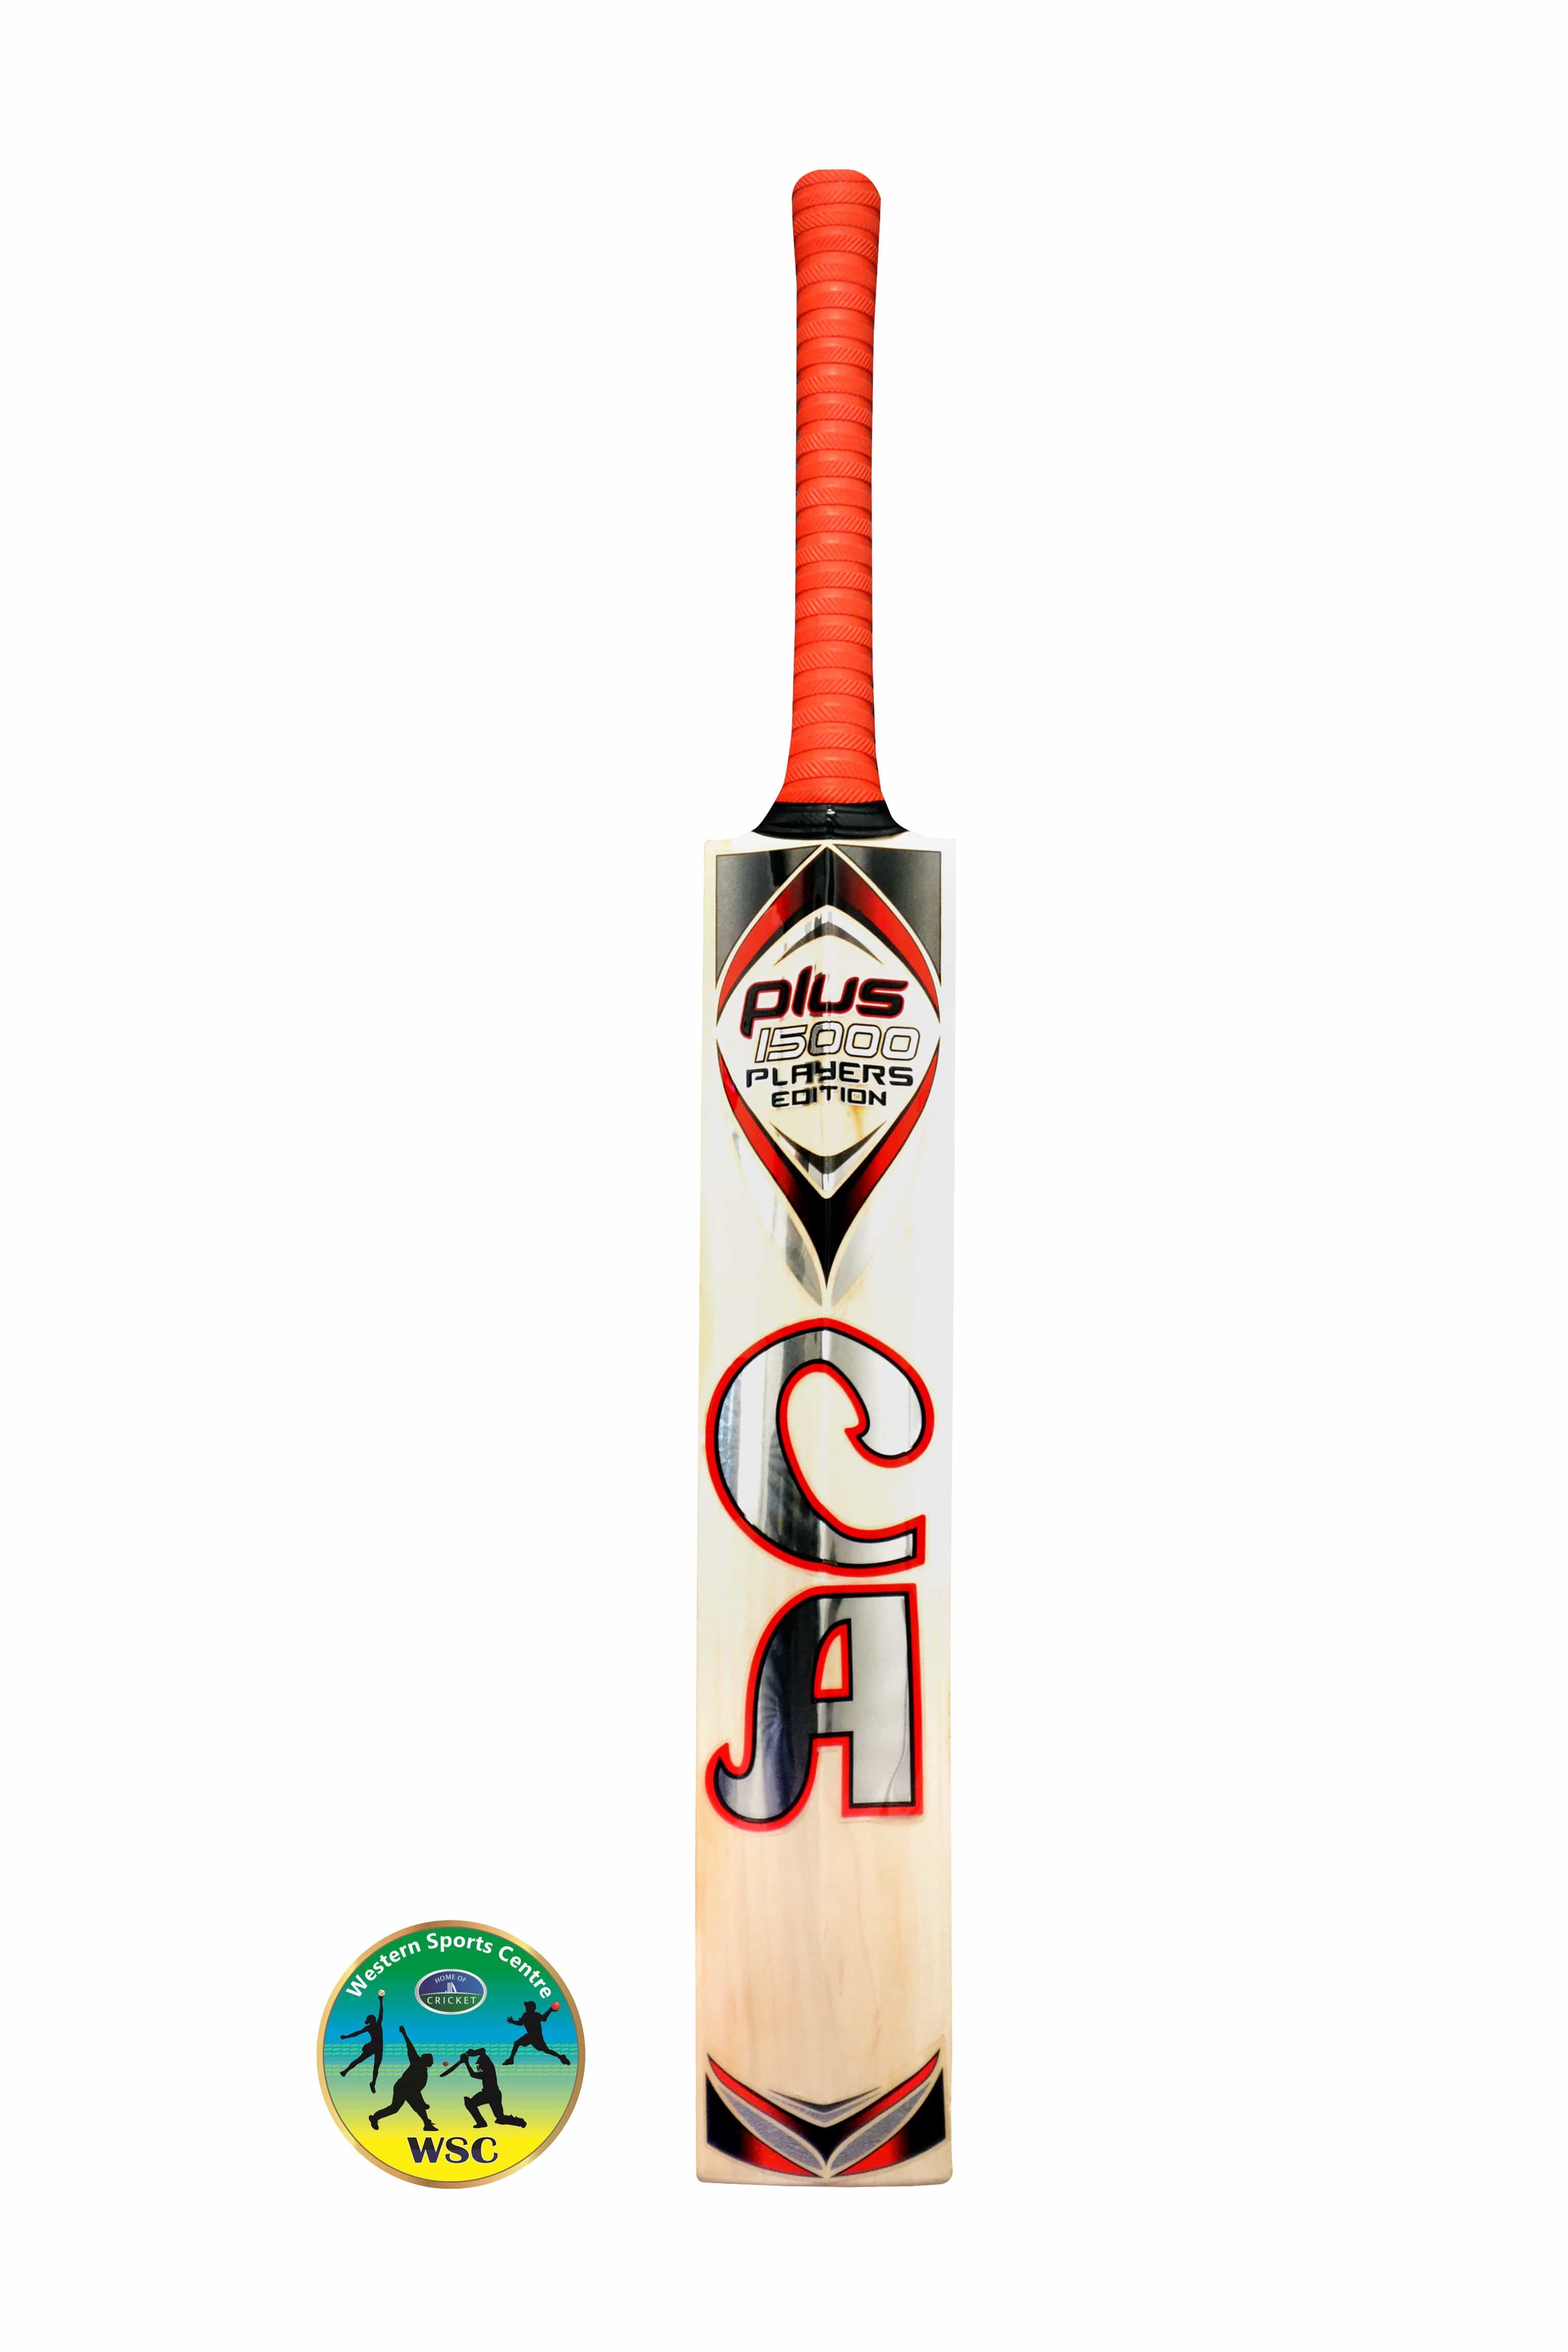 CA Cricket Bats Short Hand CA Plus 15000 PLAYERS EDITION SH Cricket Bat